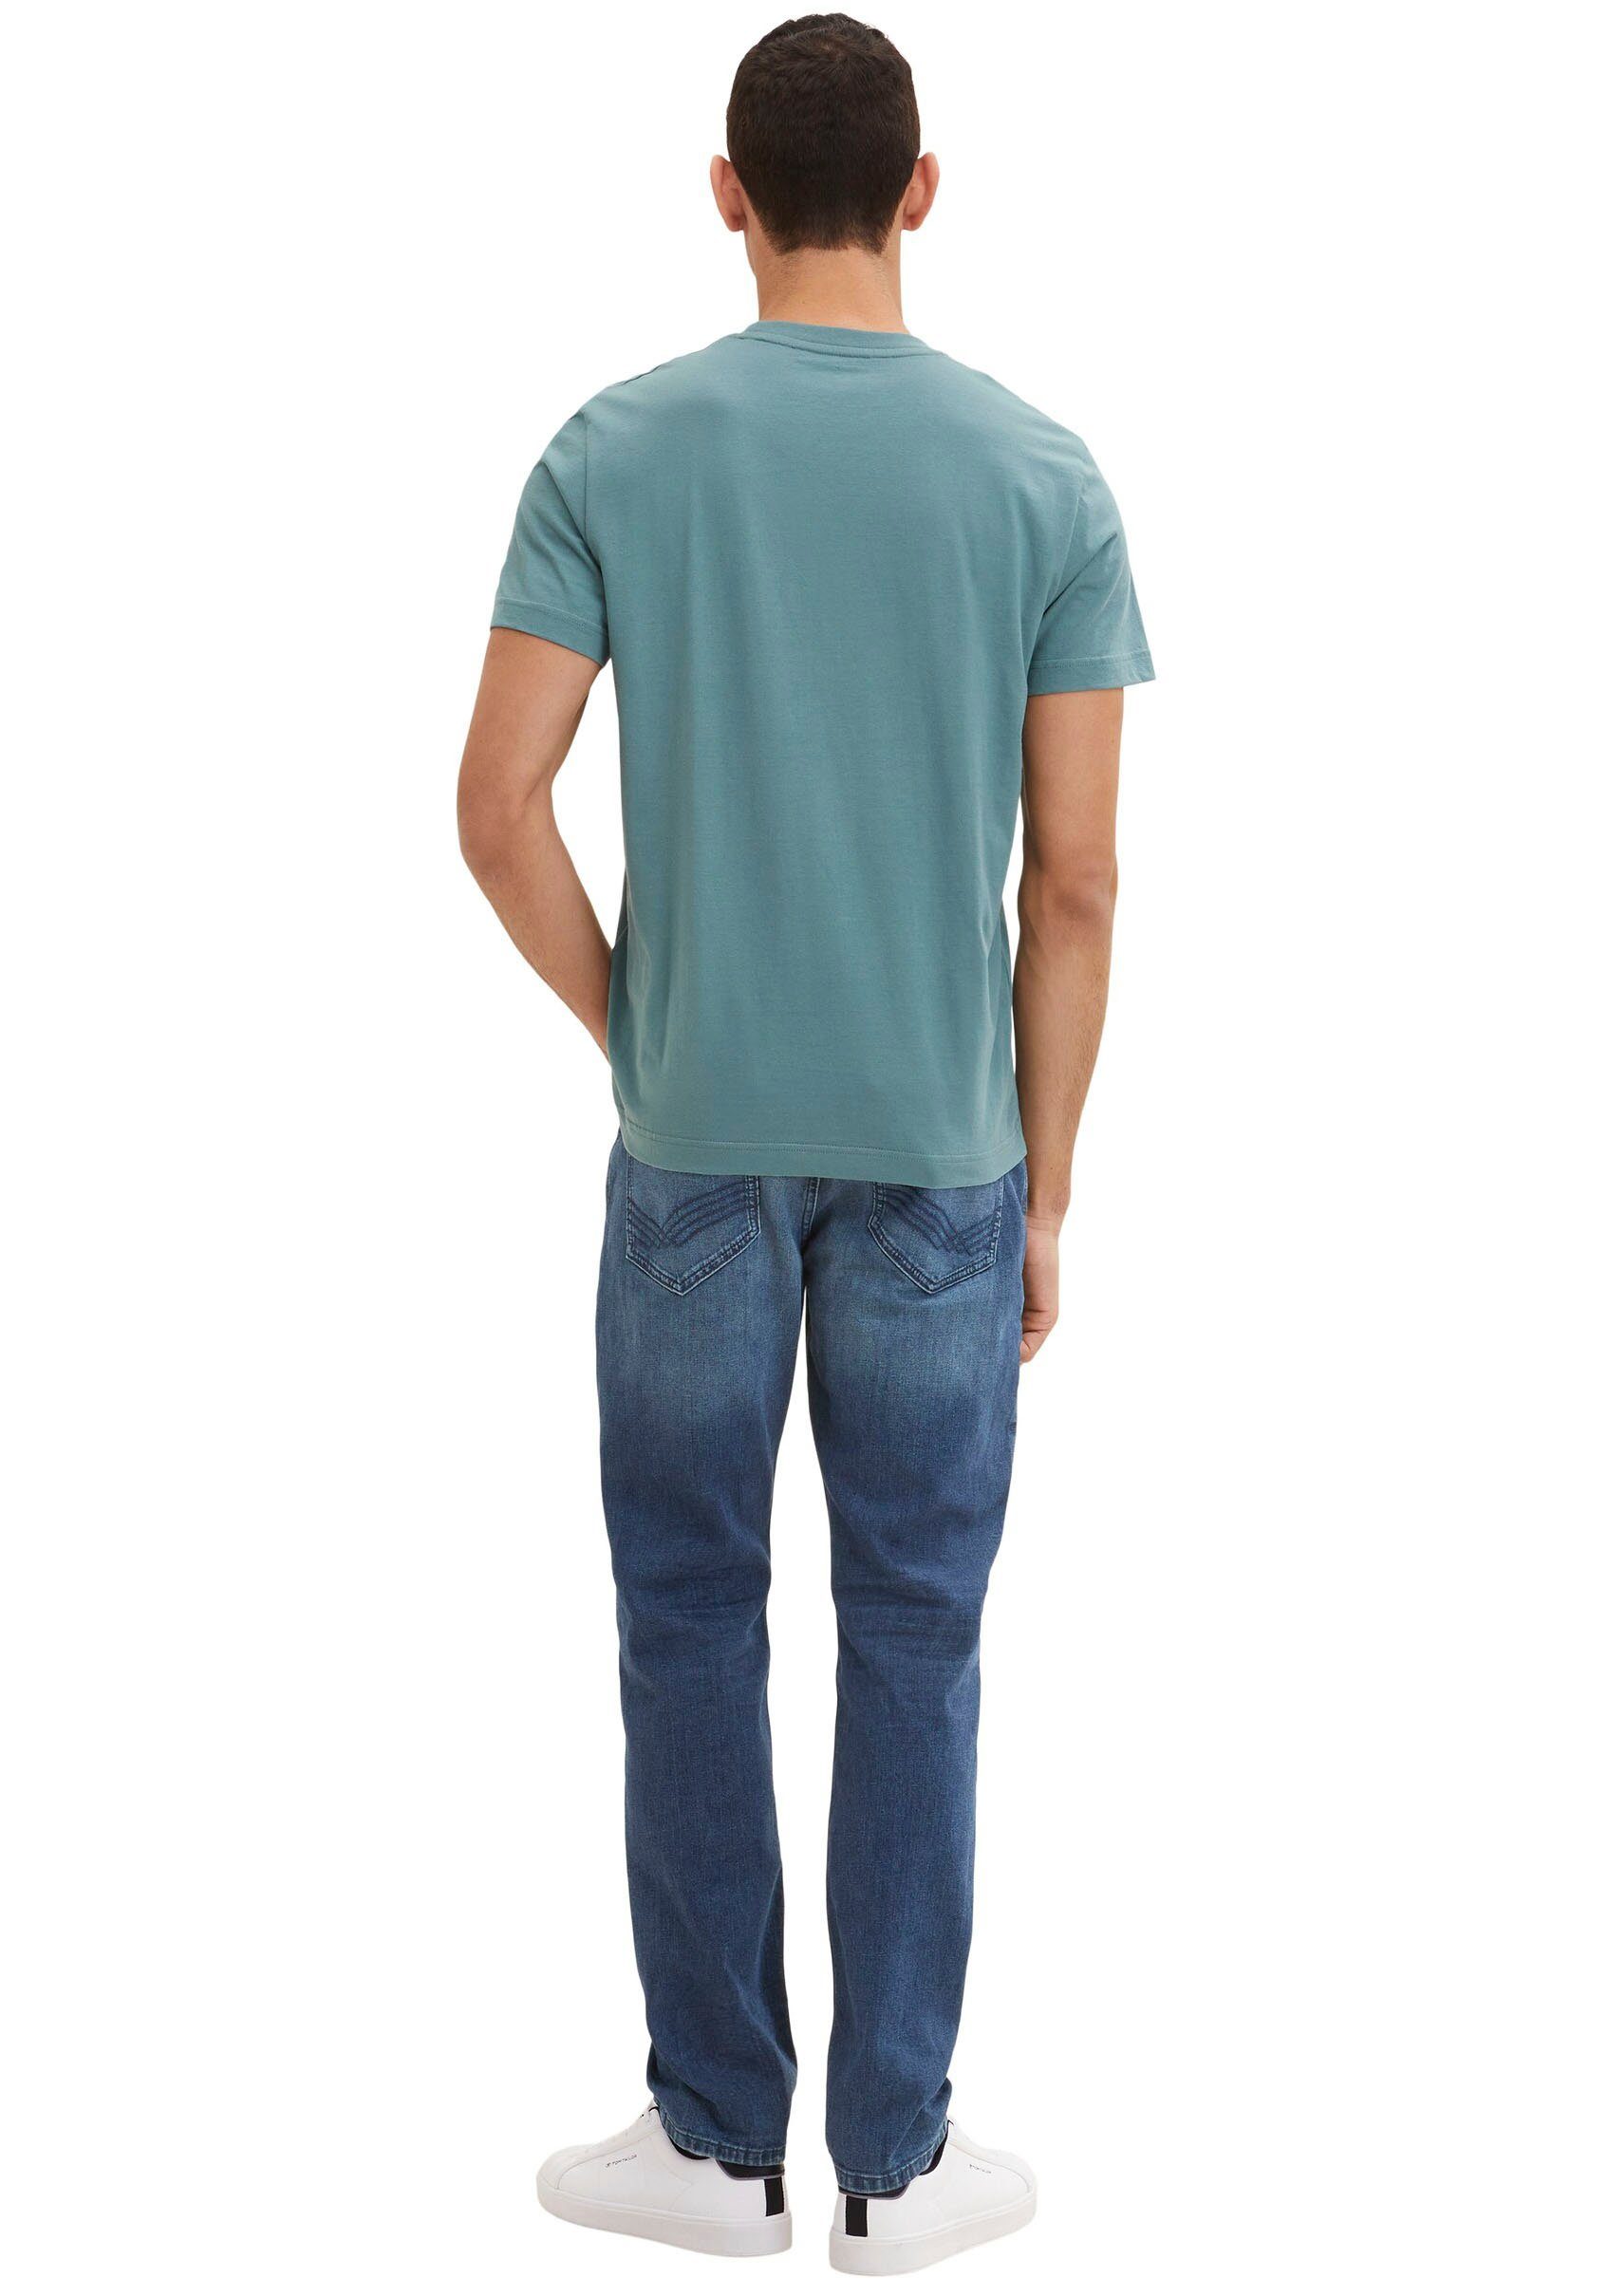 Frontprint T-Shirt TAILOR bluis Tailor TOM deep Herren Print-Shirt Tom